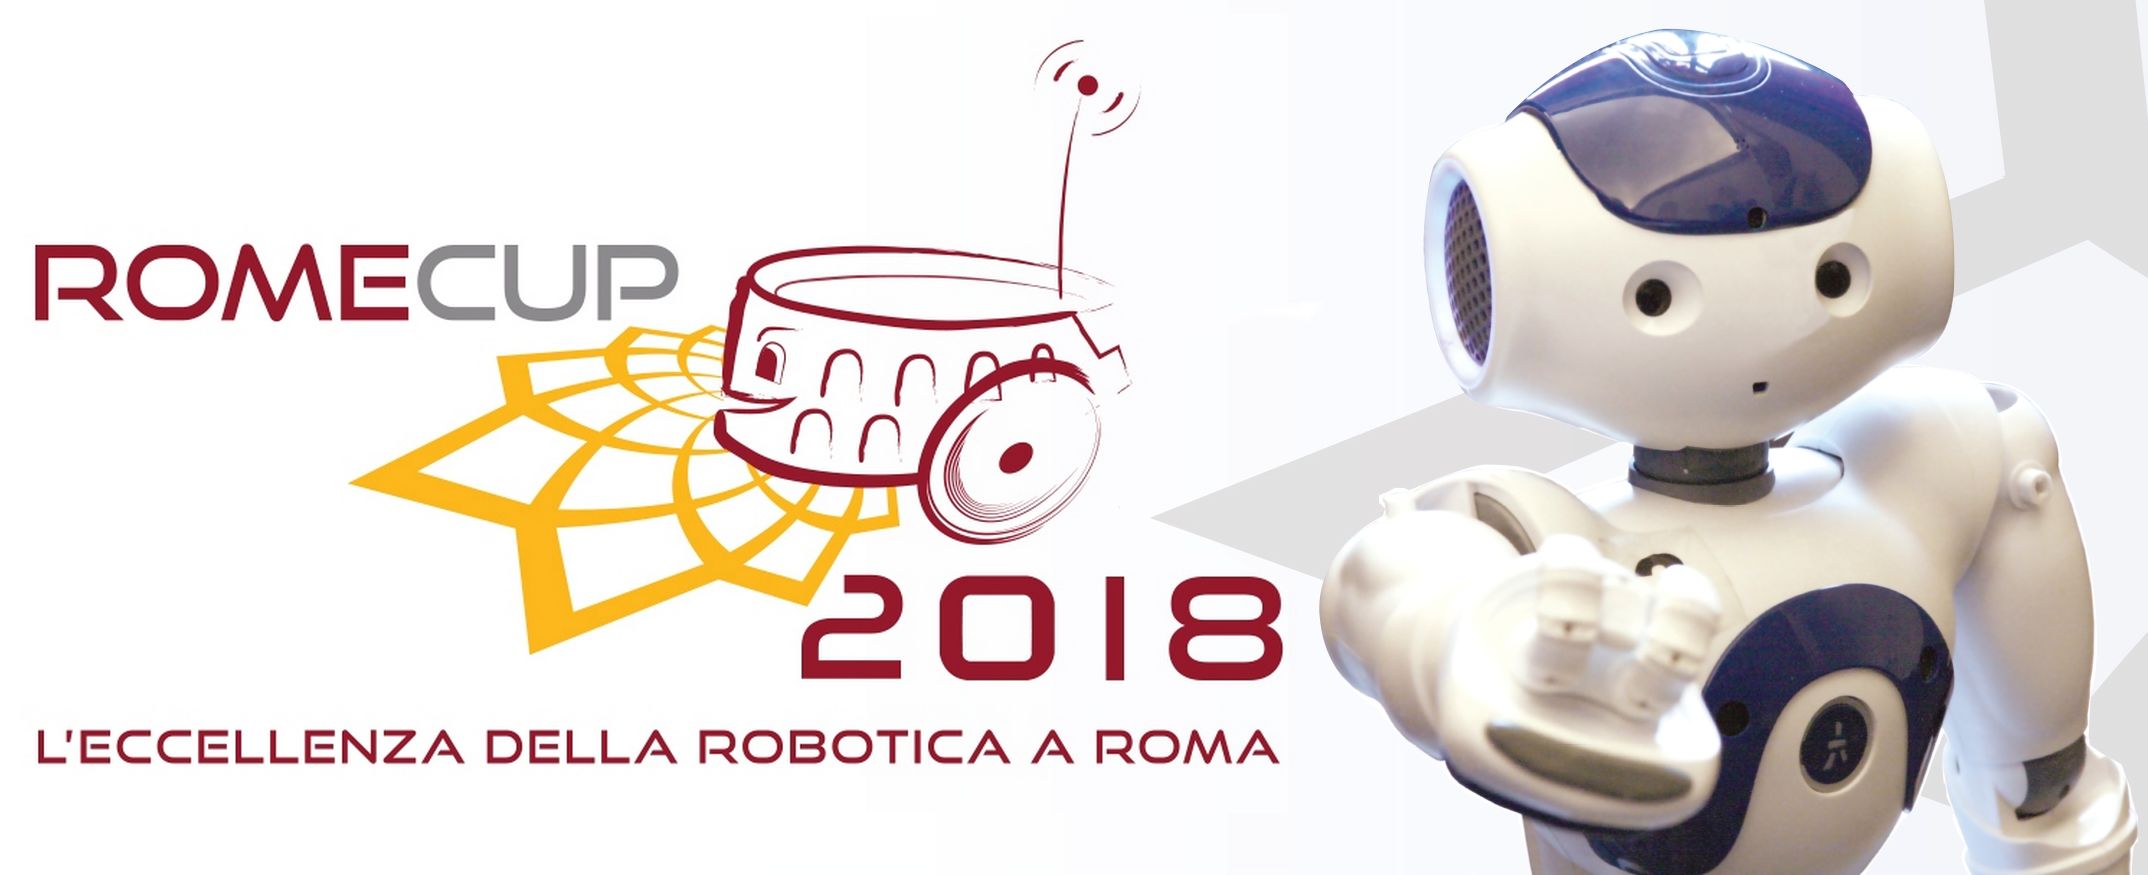 ROME CUP 2018 spazi espositivi gratuiti